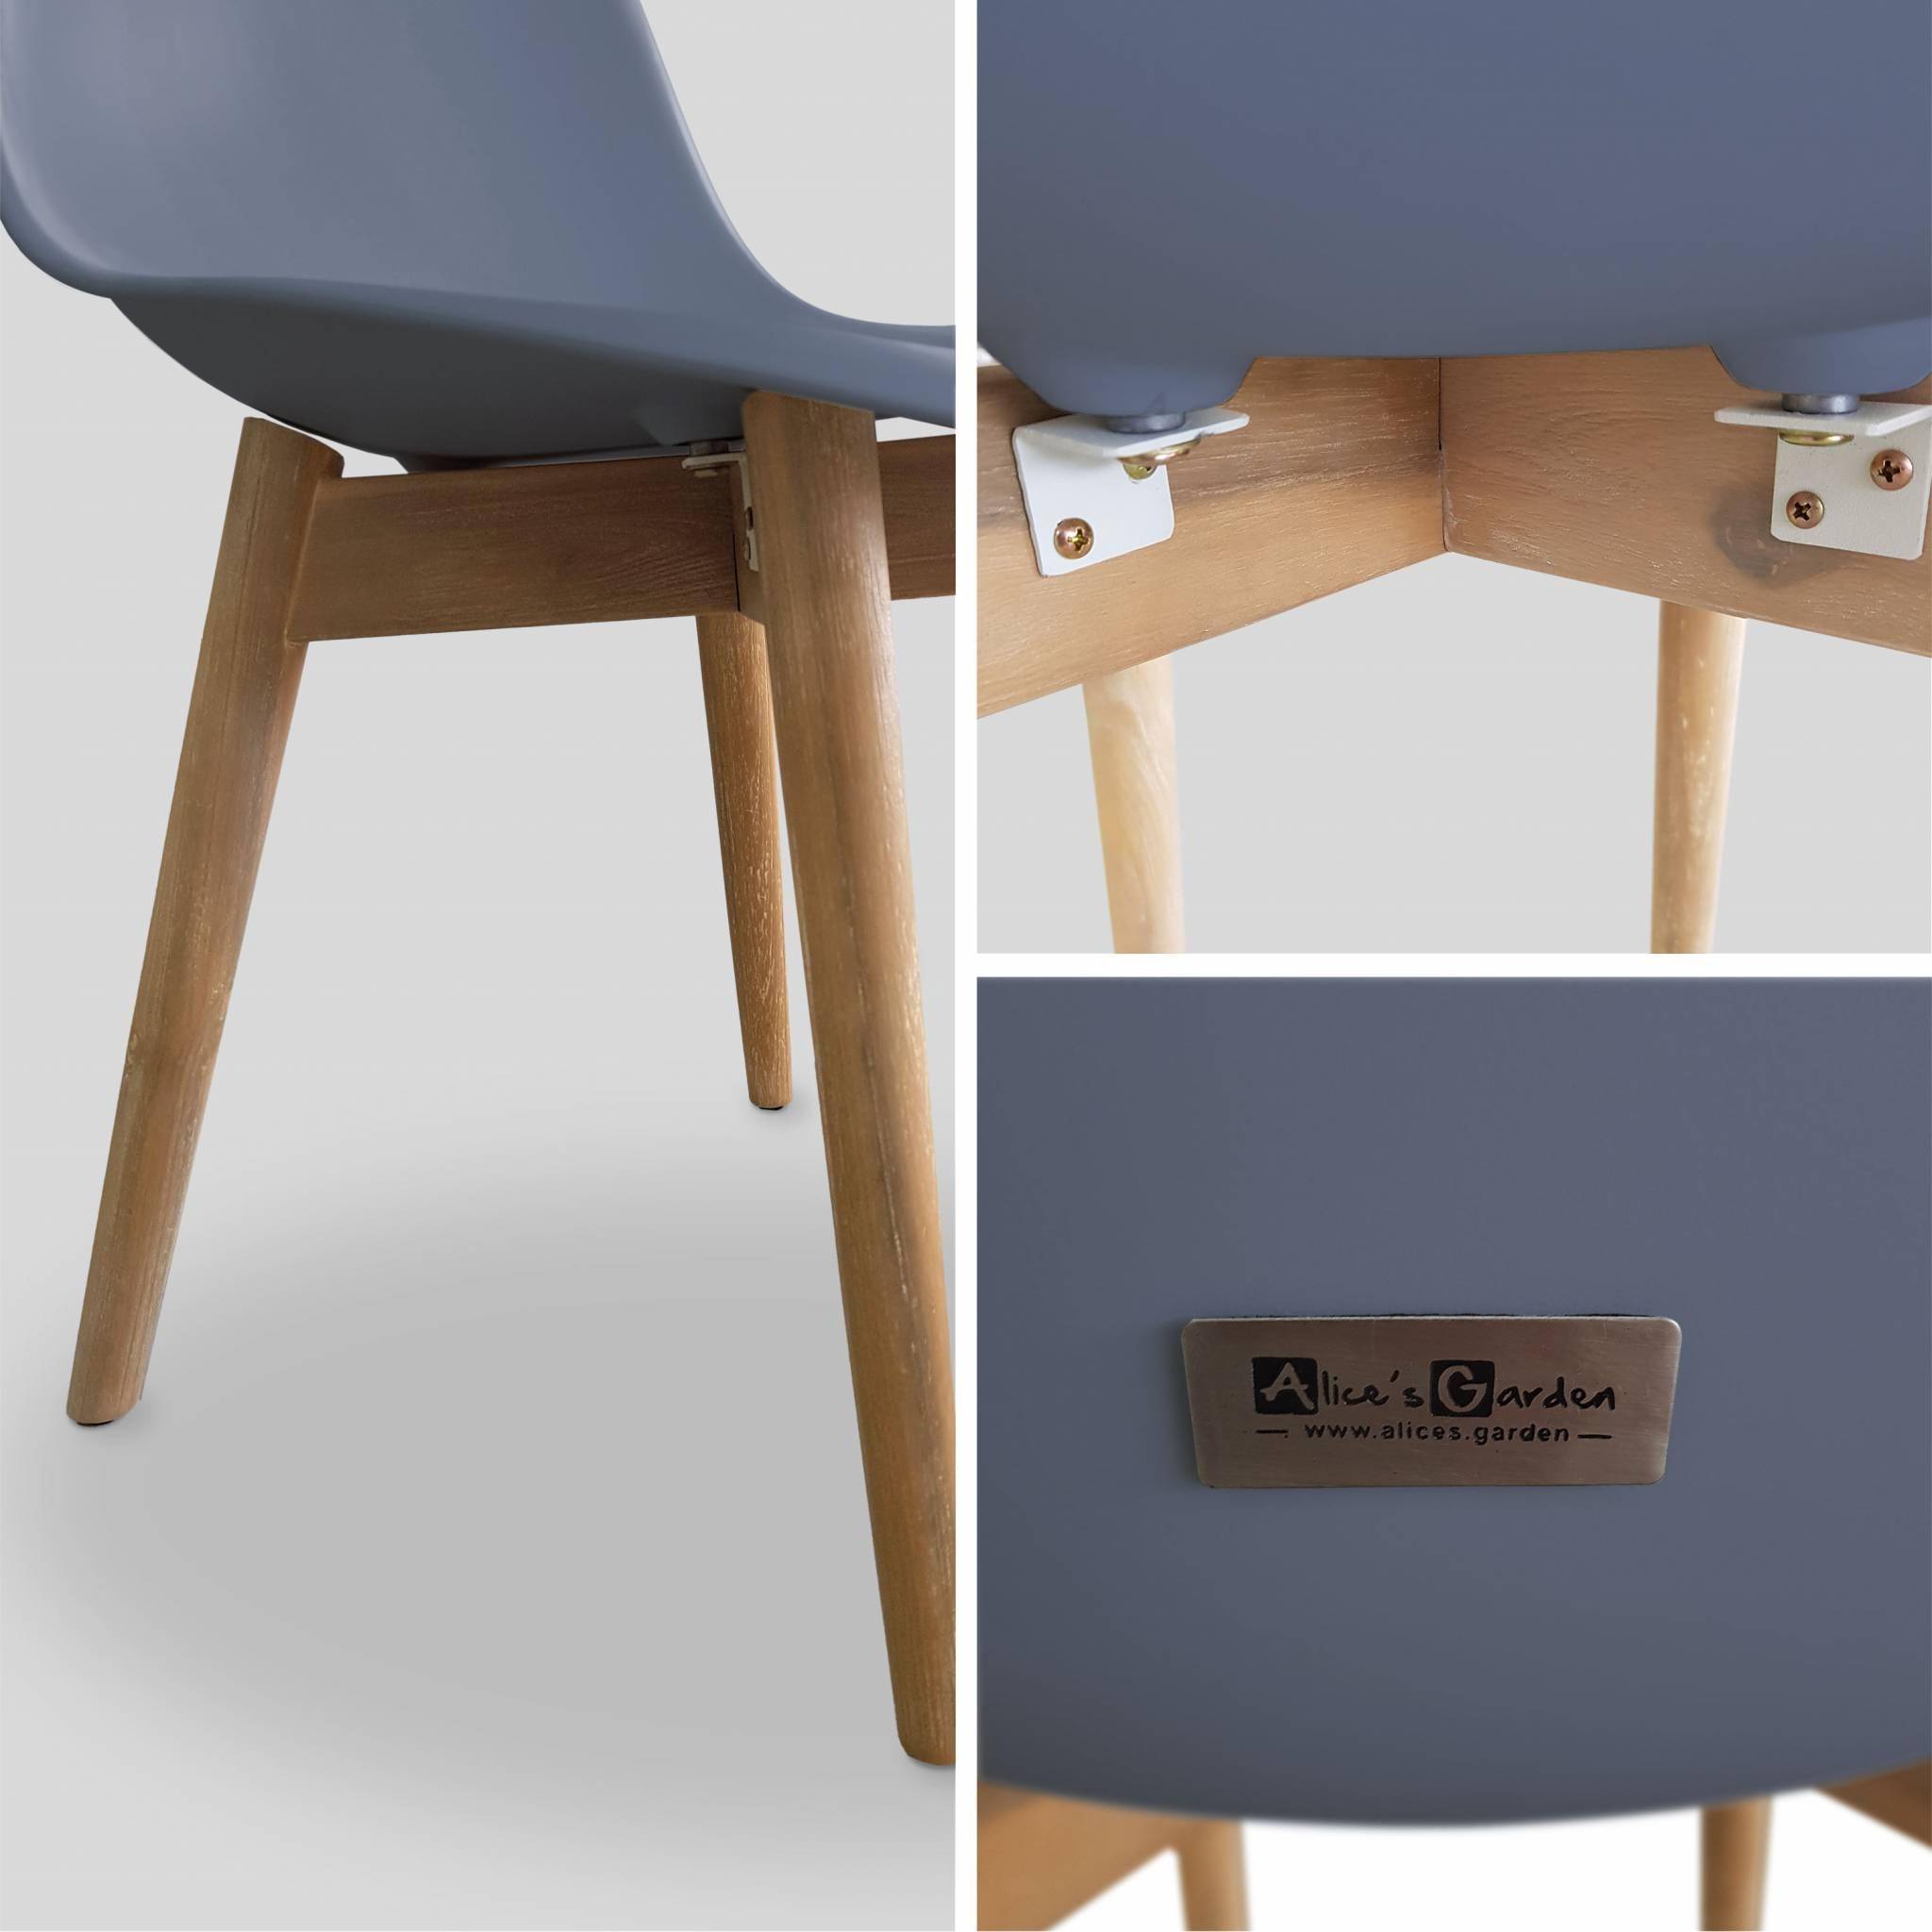 2er Set skandinavische Stühle Penida, aus Akazienholz und anthrazitfarbenem Kunstharz gespritzt, innen/außen Photo4